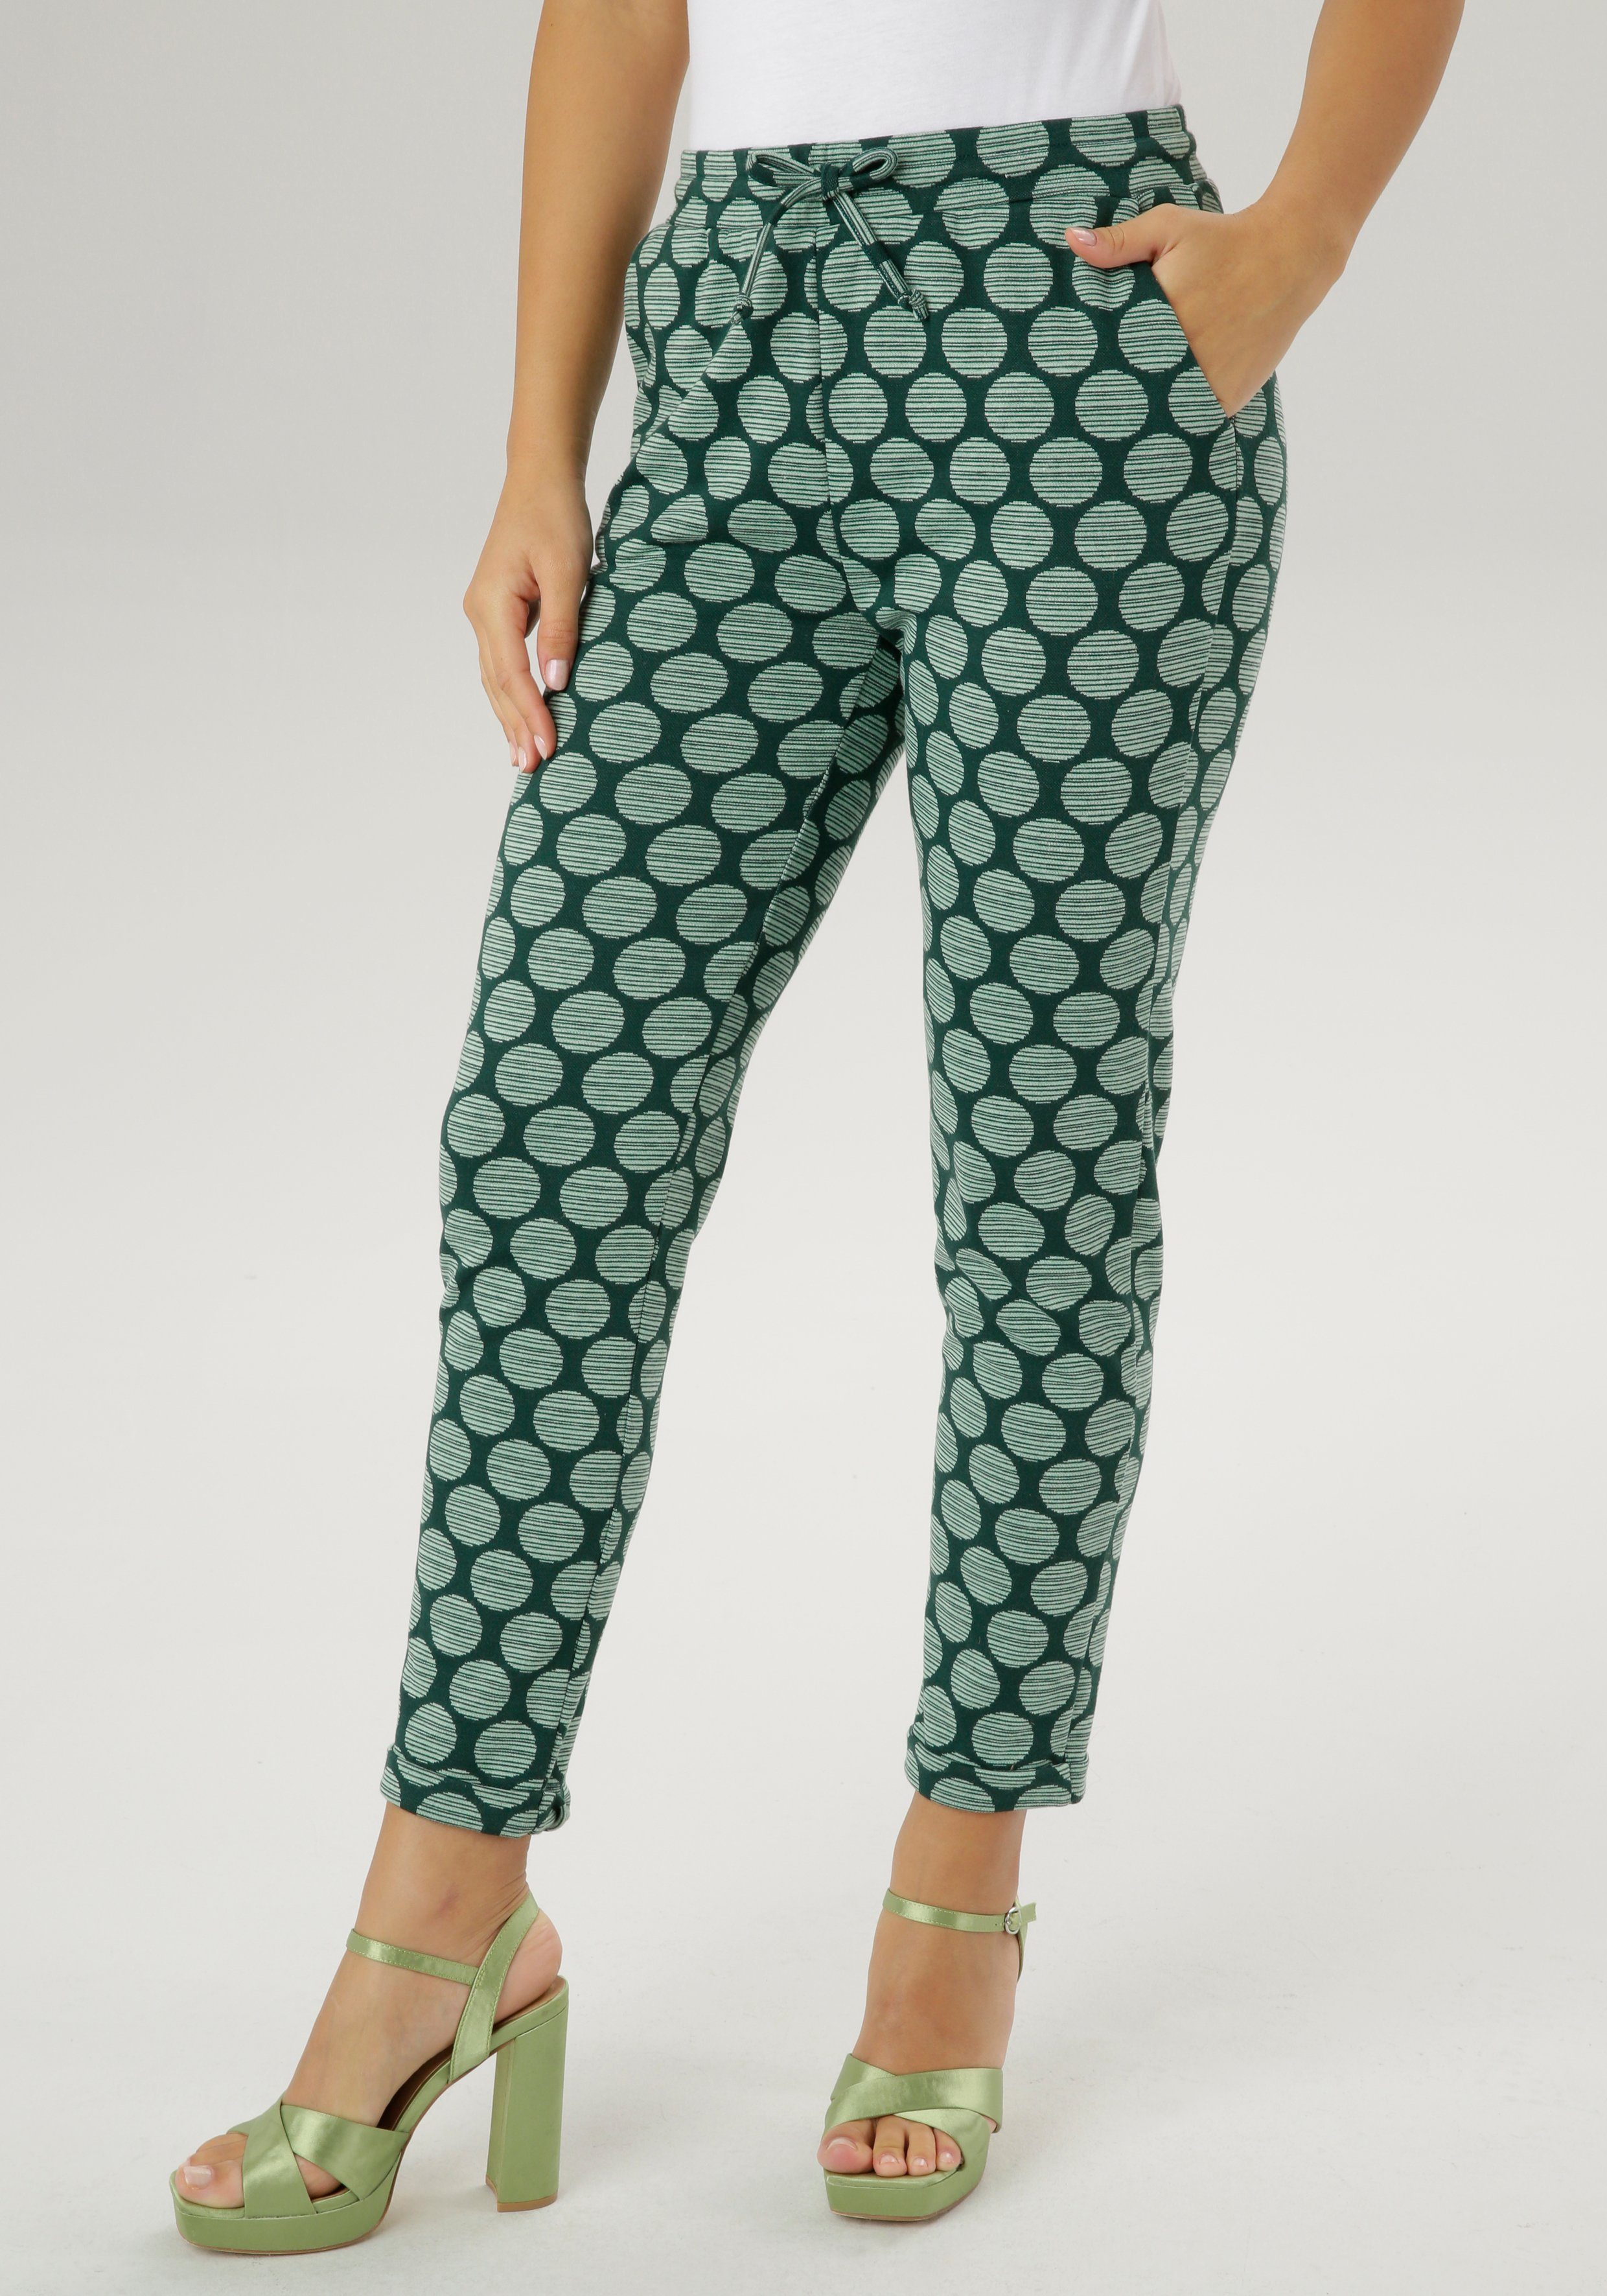 Gemusterte grüne Hosen für Damen online kaufen | OTTO